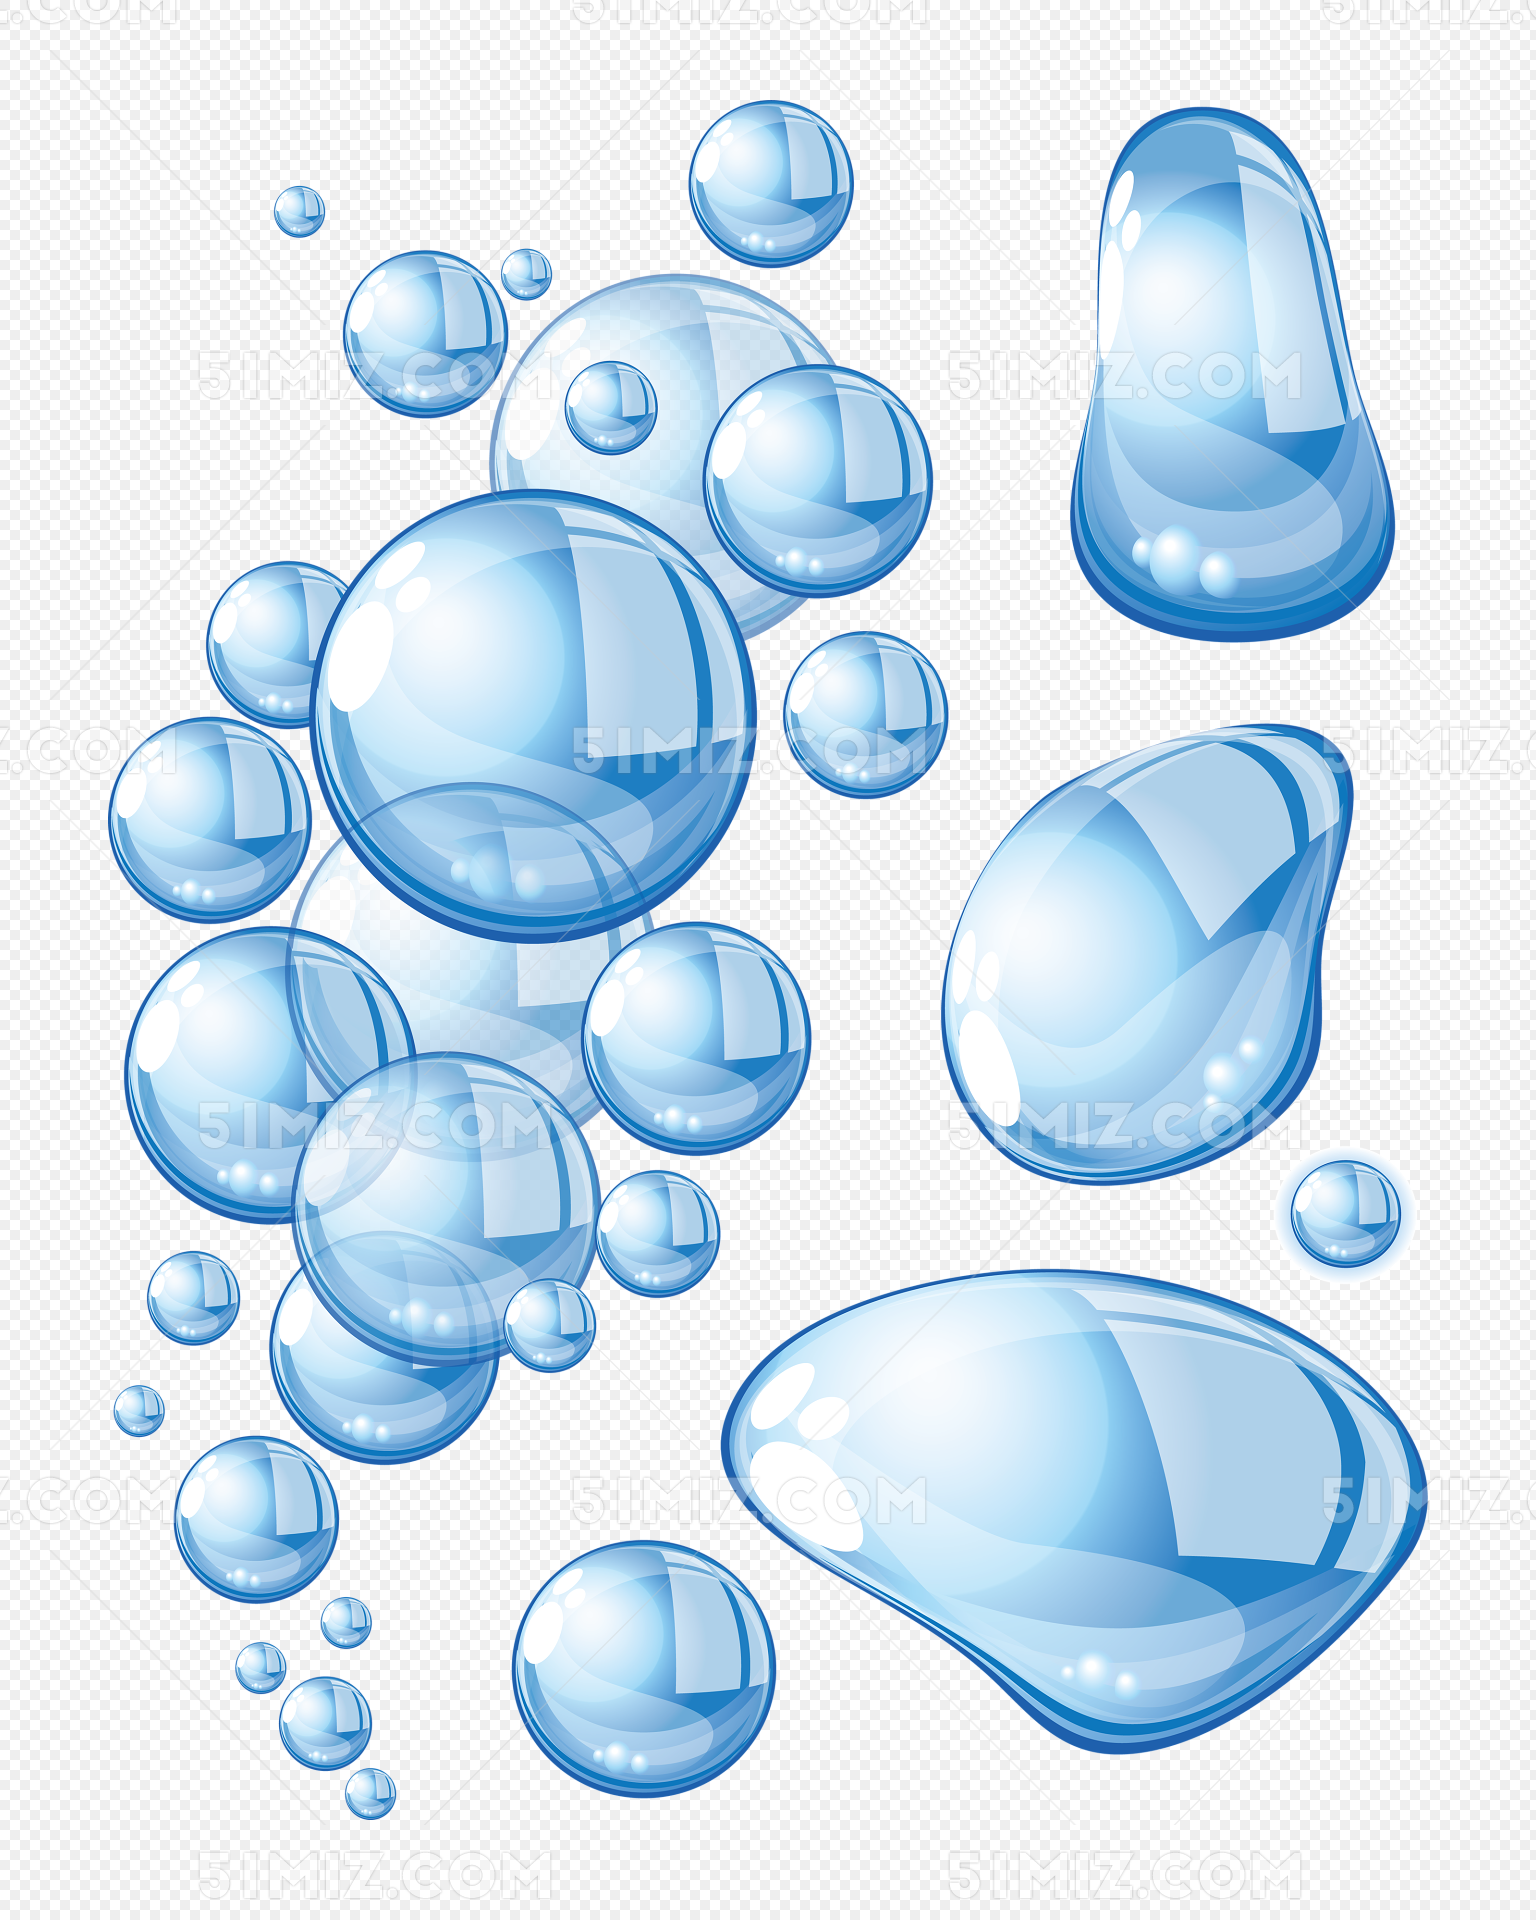 水滴形状素材-水滴形状模板-水滴形状图片免费下载-设图网